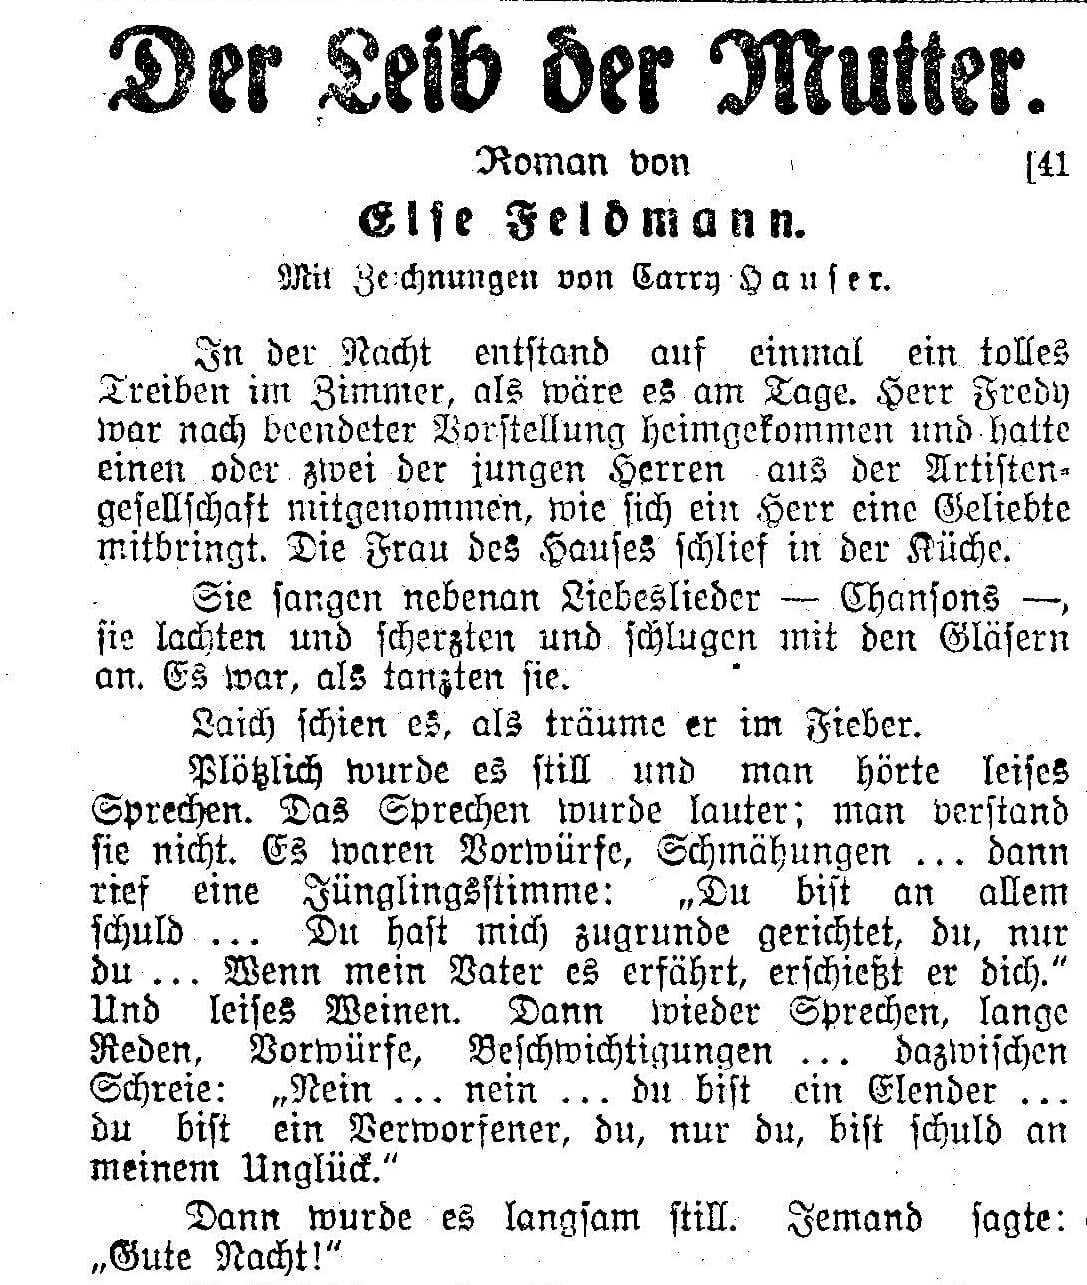 Beginn des Romans, abgedruckt am 5. Mai 1924 in der Arbeiter Zeitung, Quelle: ANNO/ÖNB 